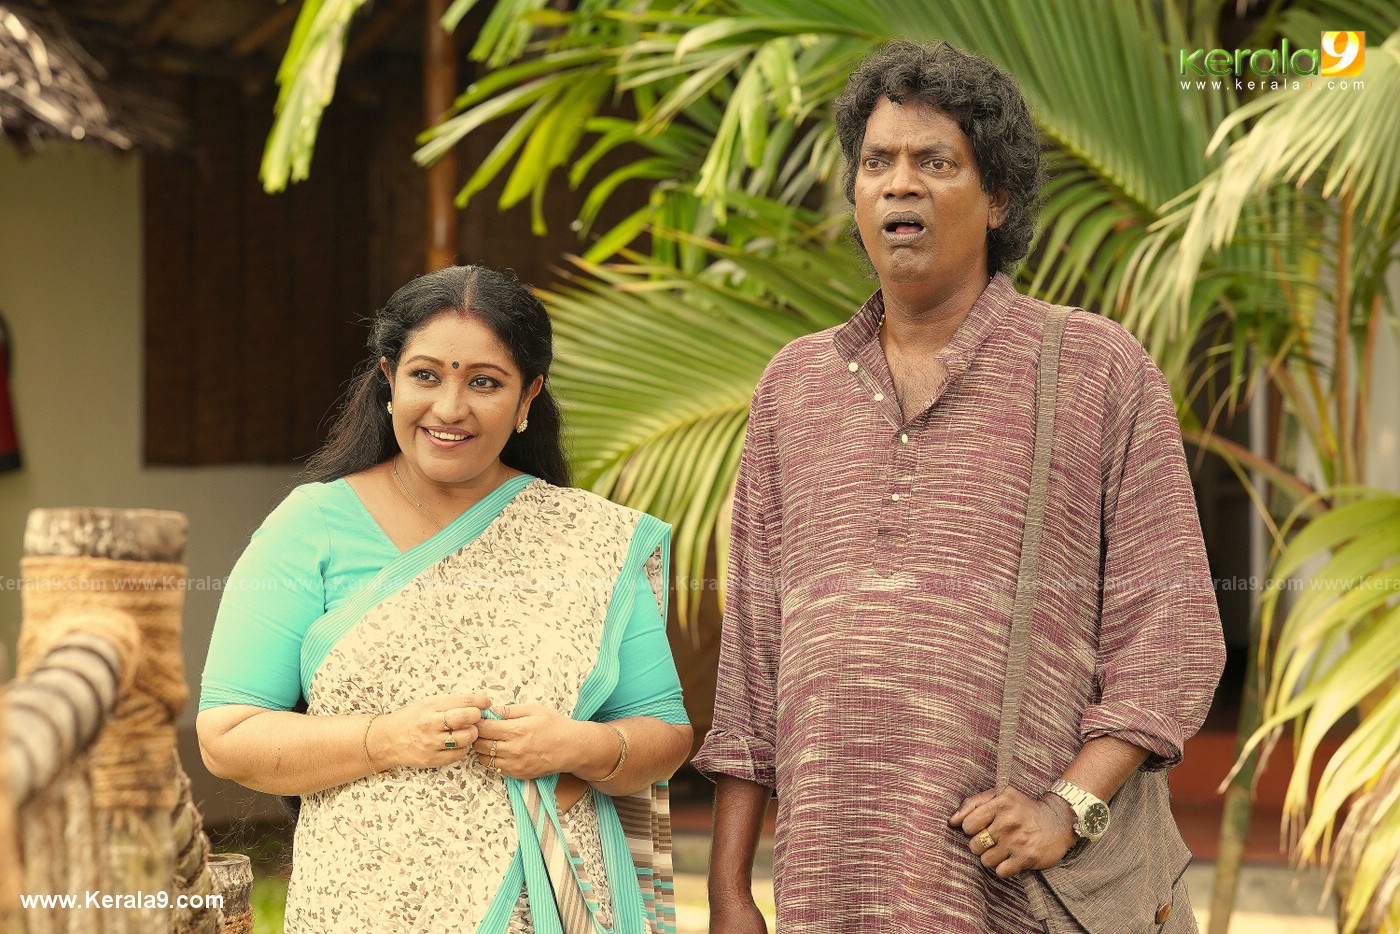 madura raja movie stills 1 - Kerala9.com